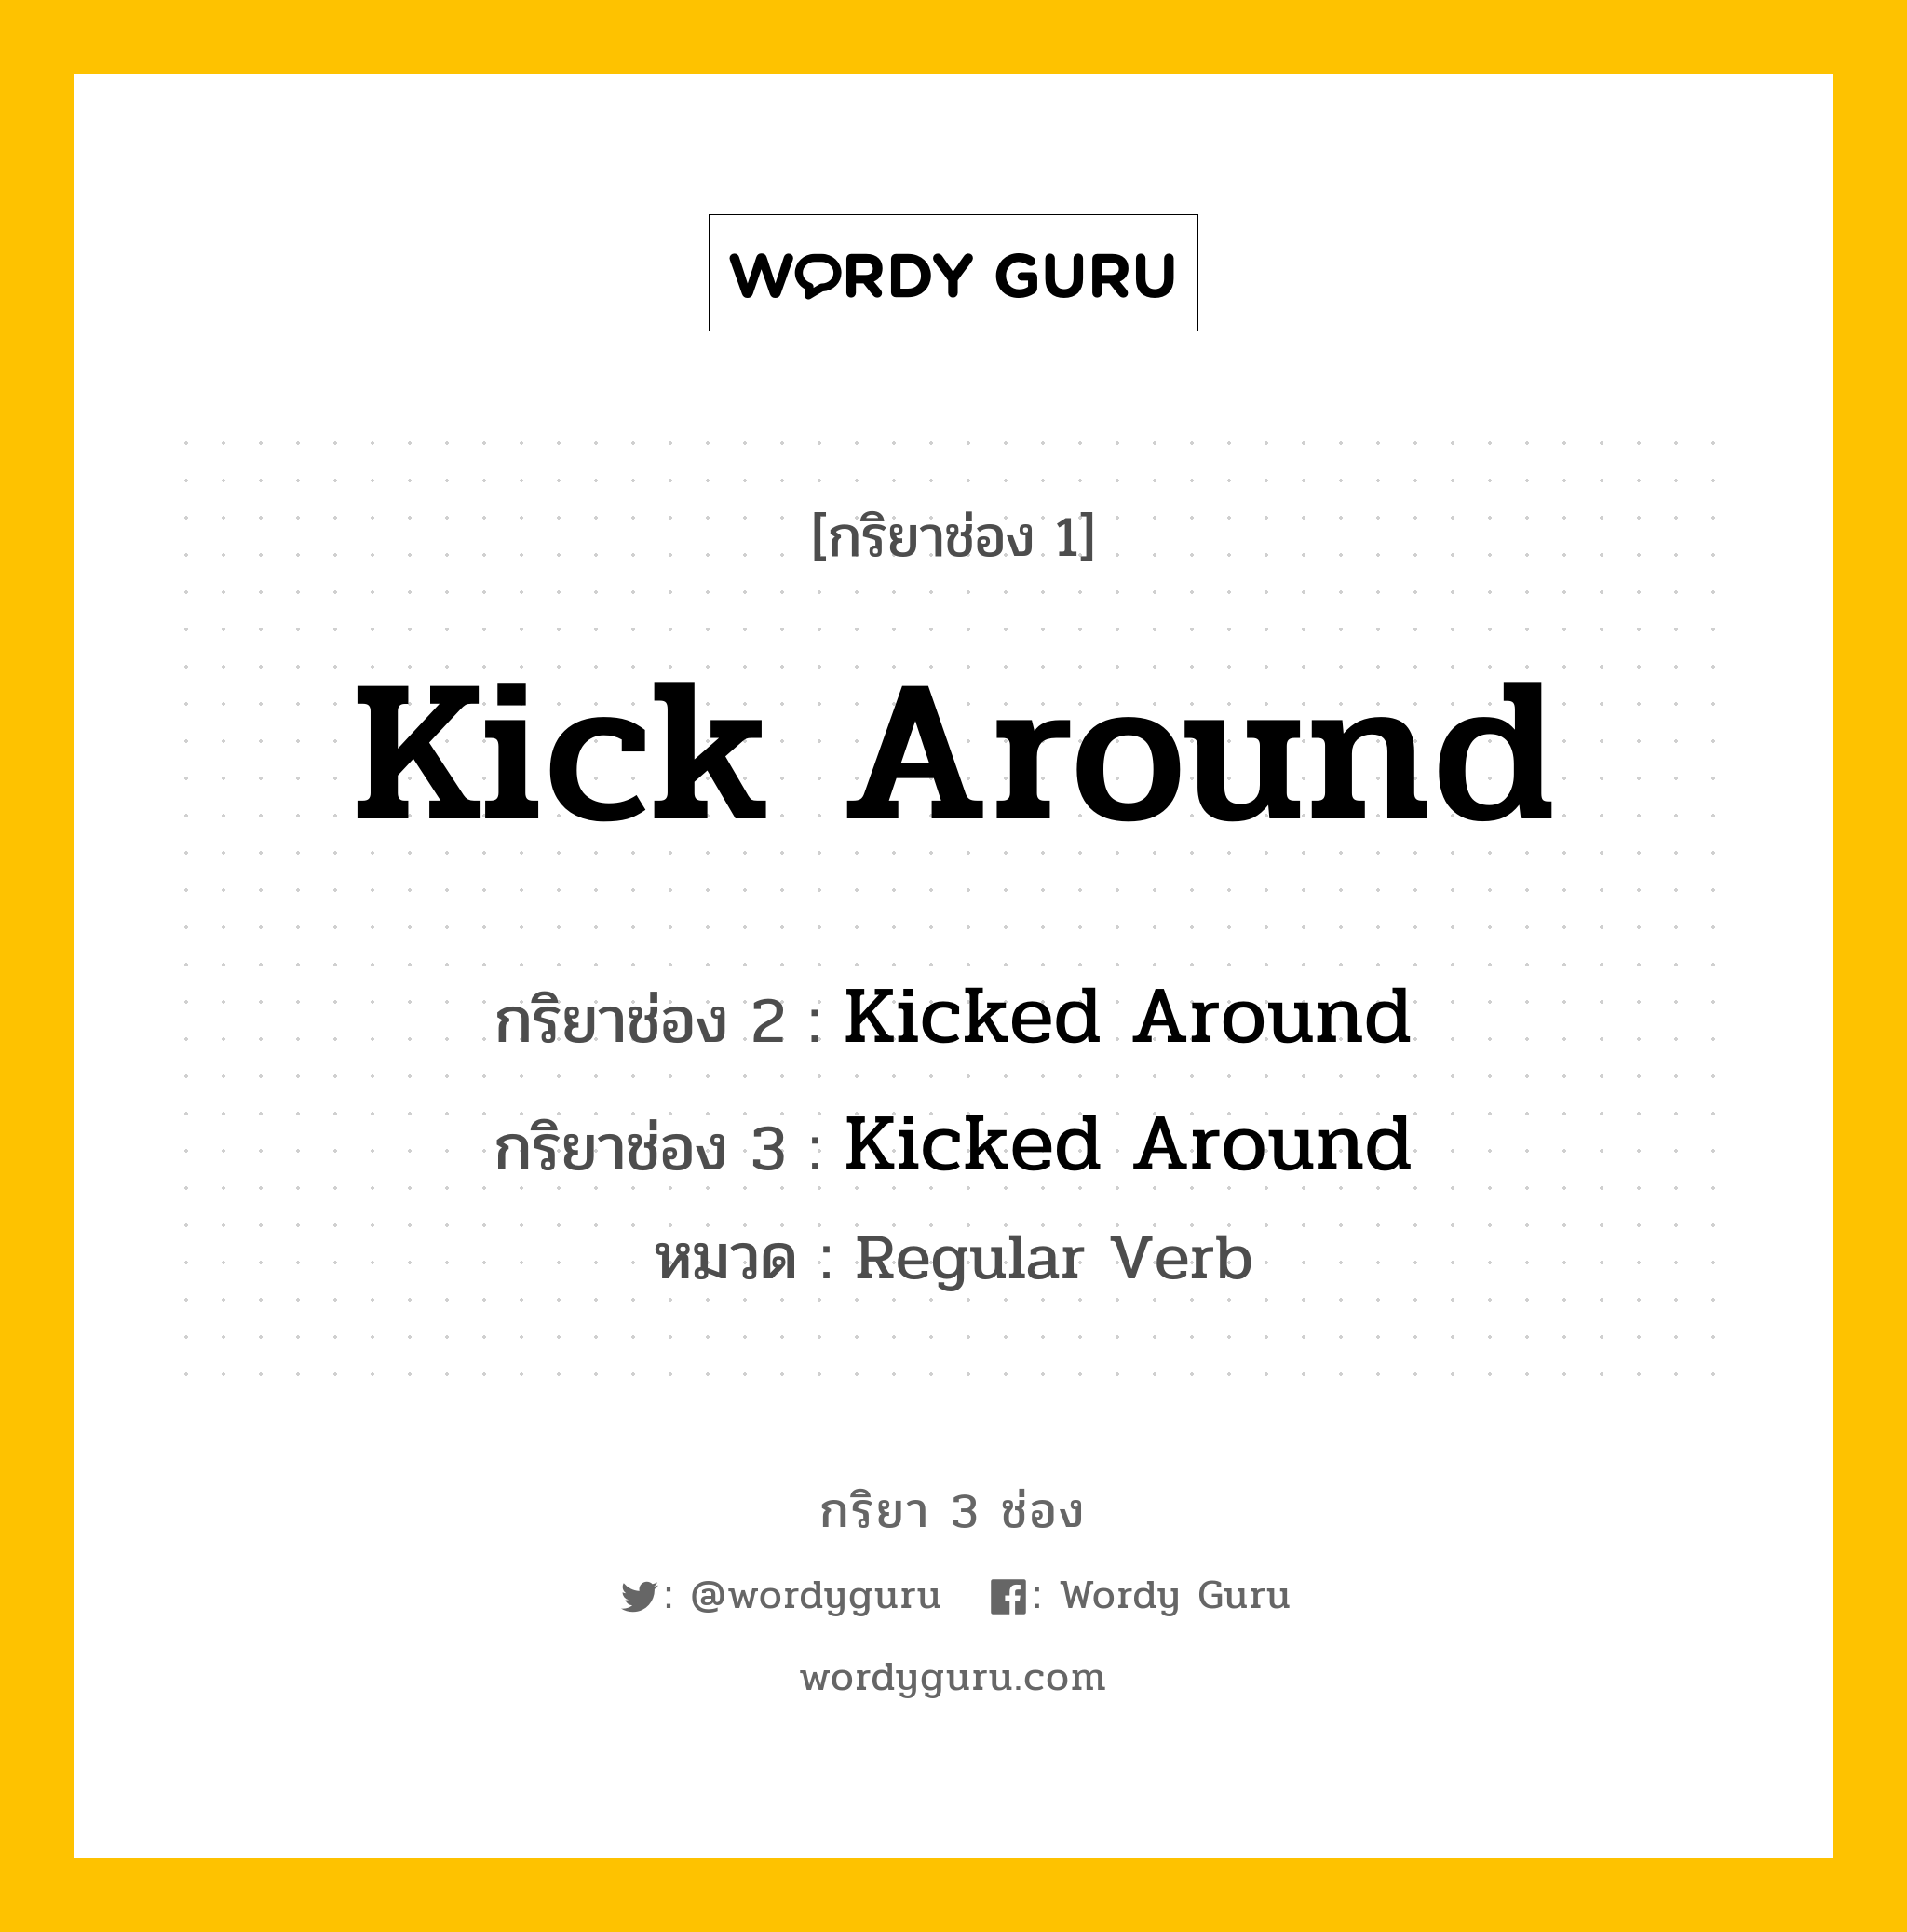 กริยา 3 ช่อง: Kick Around ช่อง 2 Kick Around ช่อง 3 คืออะไร, กริยาช่อง 1 Kick Around กริยาช่อง 2 Kicked Around กริยาช่อง 3 Kicked Around หมวด Regular Verb หมวด Regular Verb